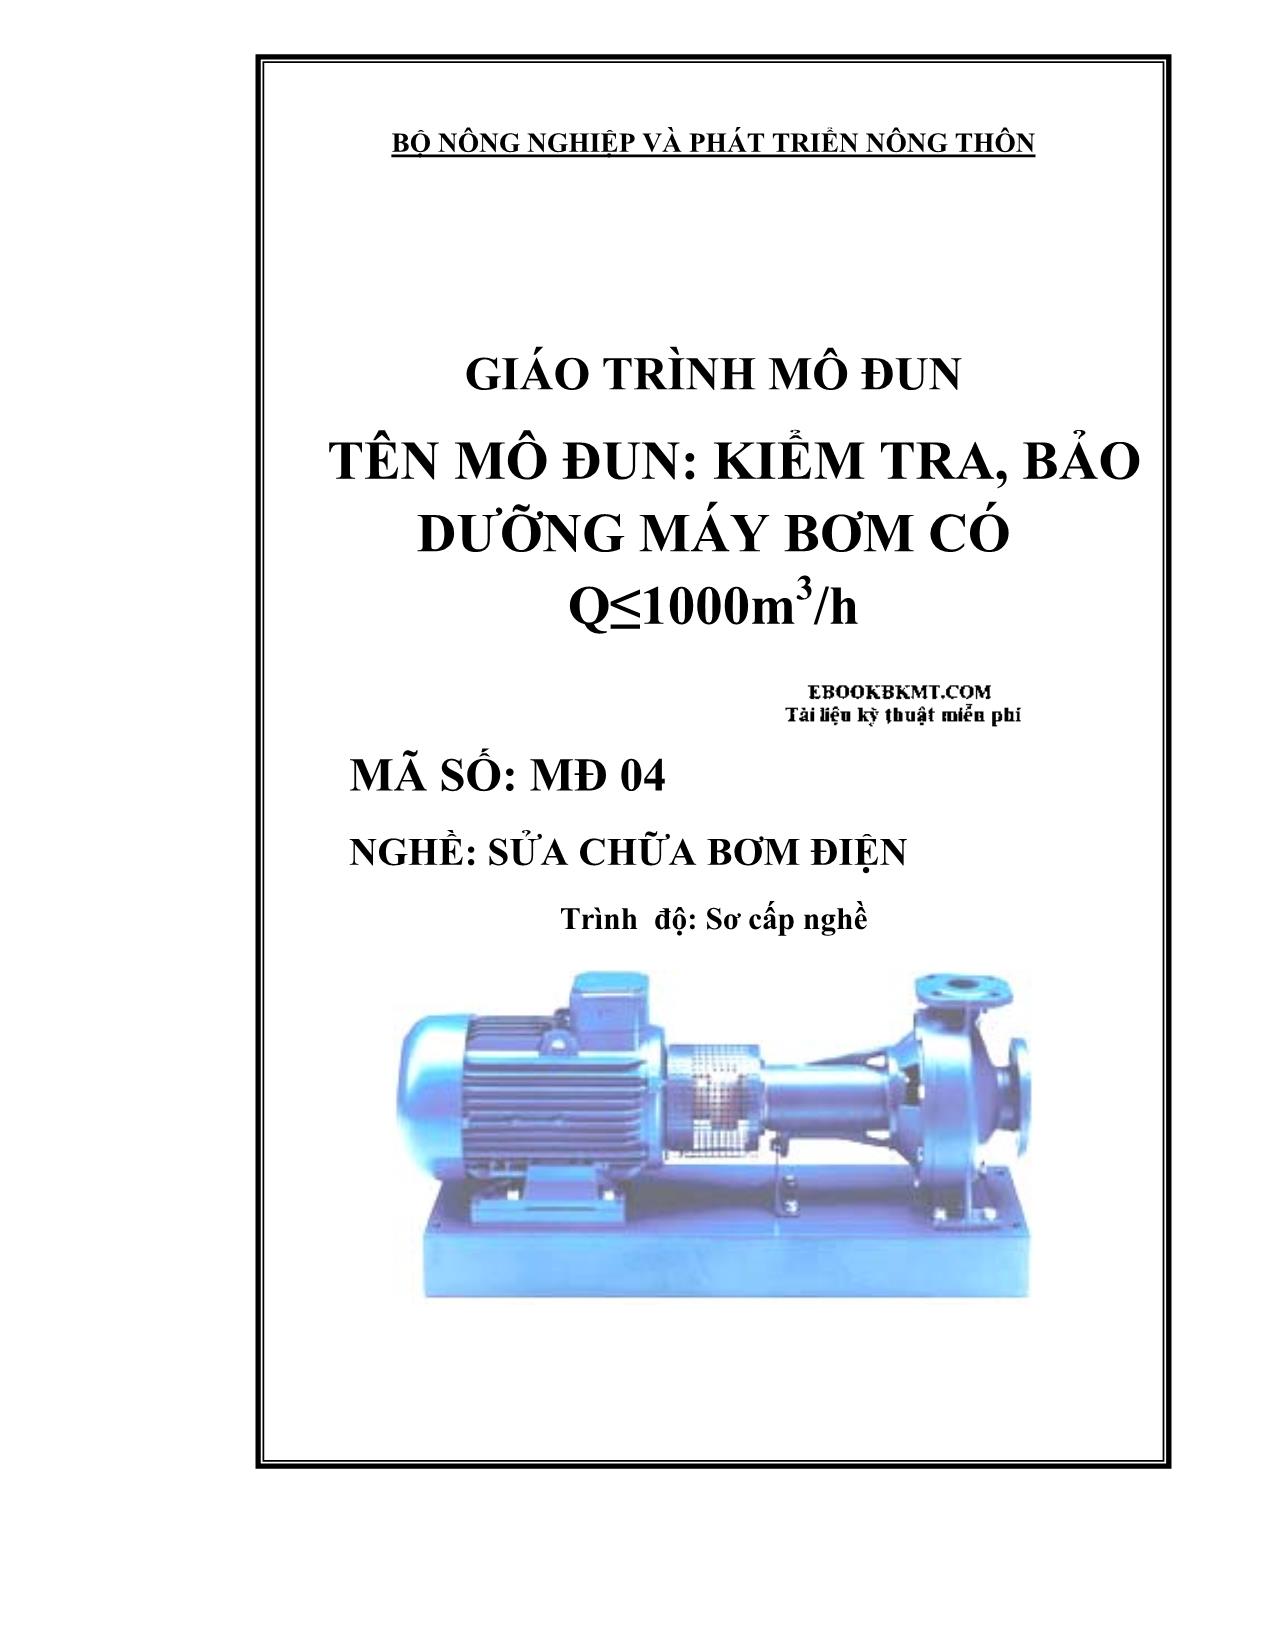 Giáo trình Kiểm tra, bảo dưỡng máy bơm có Q≤1000m3/h trang 1